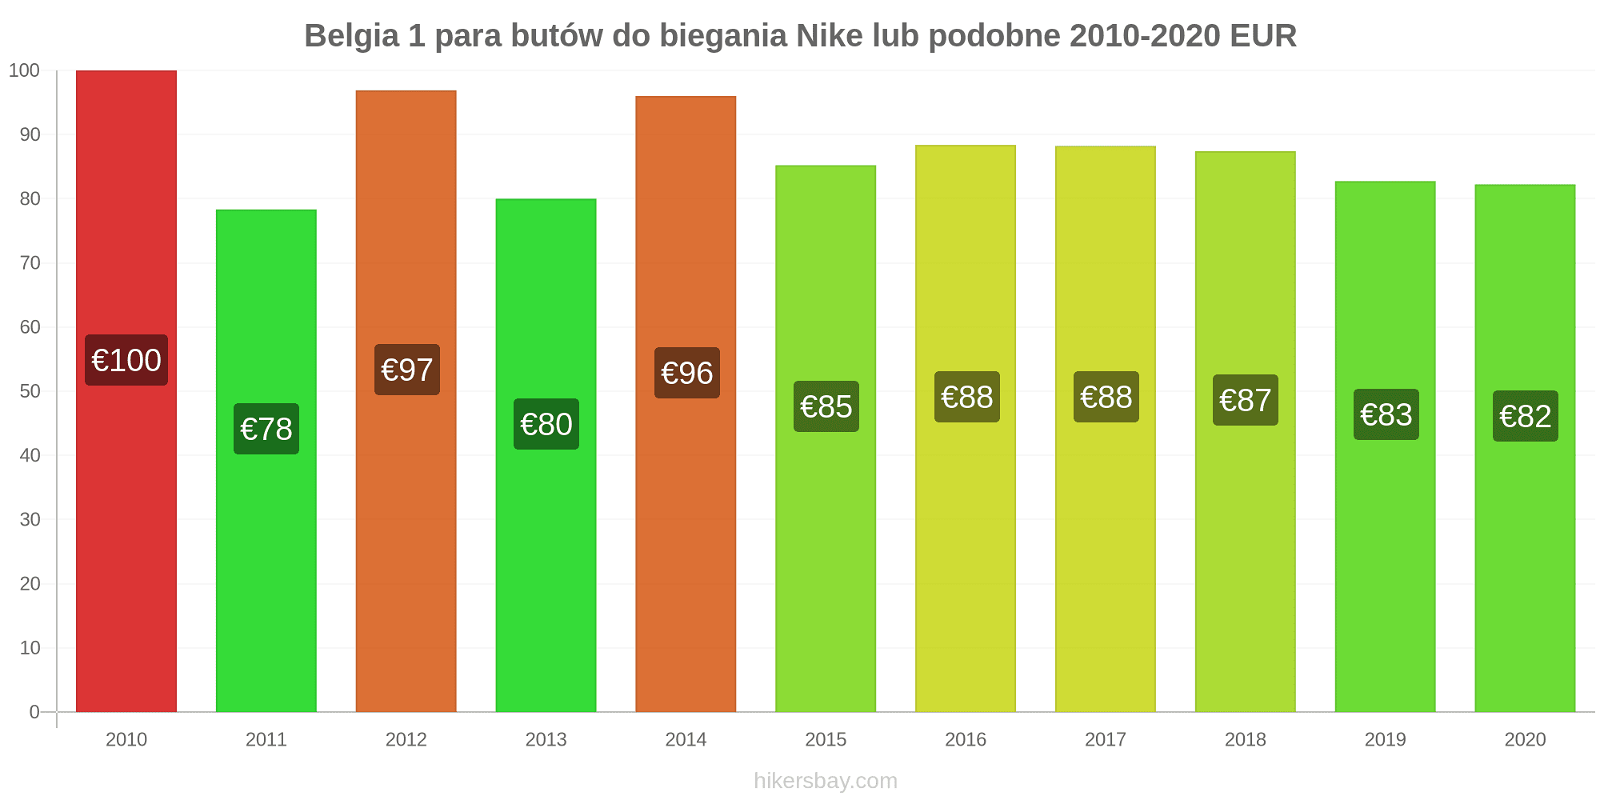 Belgia zmiany cen 1 para butów do biegania Nike lub podobne hikersbay.com